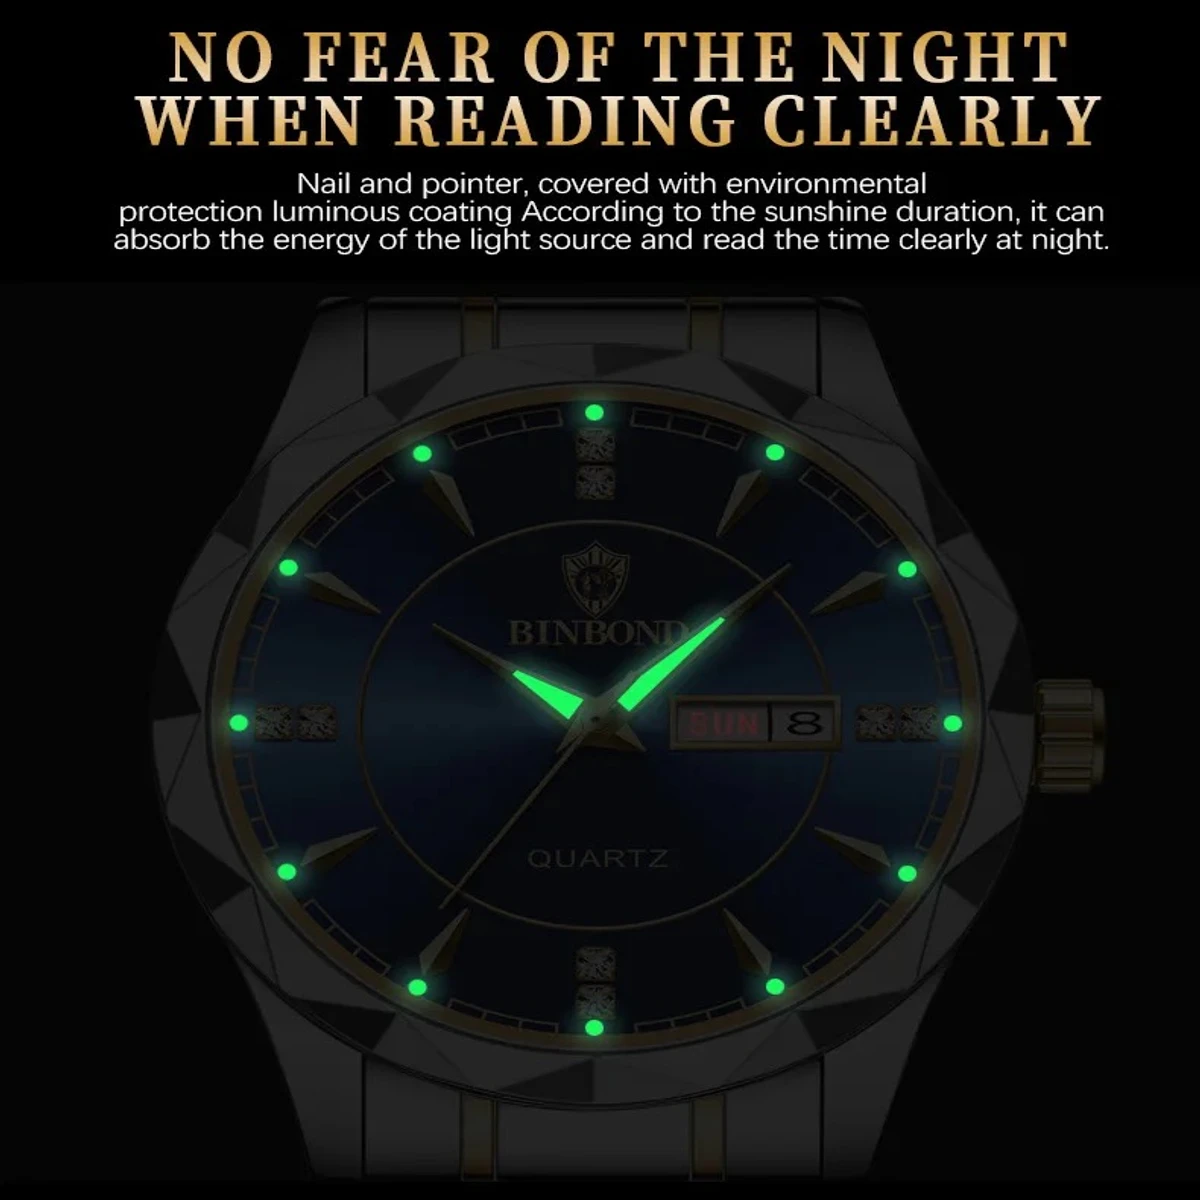 Binbond Luxury Men Watches Business Top Brand Man Wristwatch Waterproof Luminous Date Week Quartz Men's Watch High Quality+Box- Black & Golden